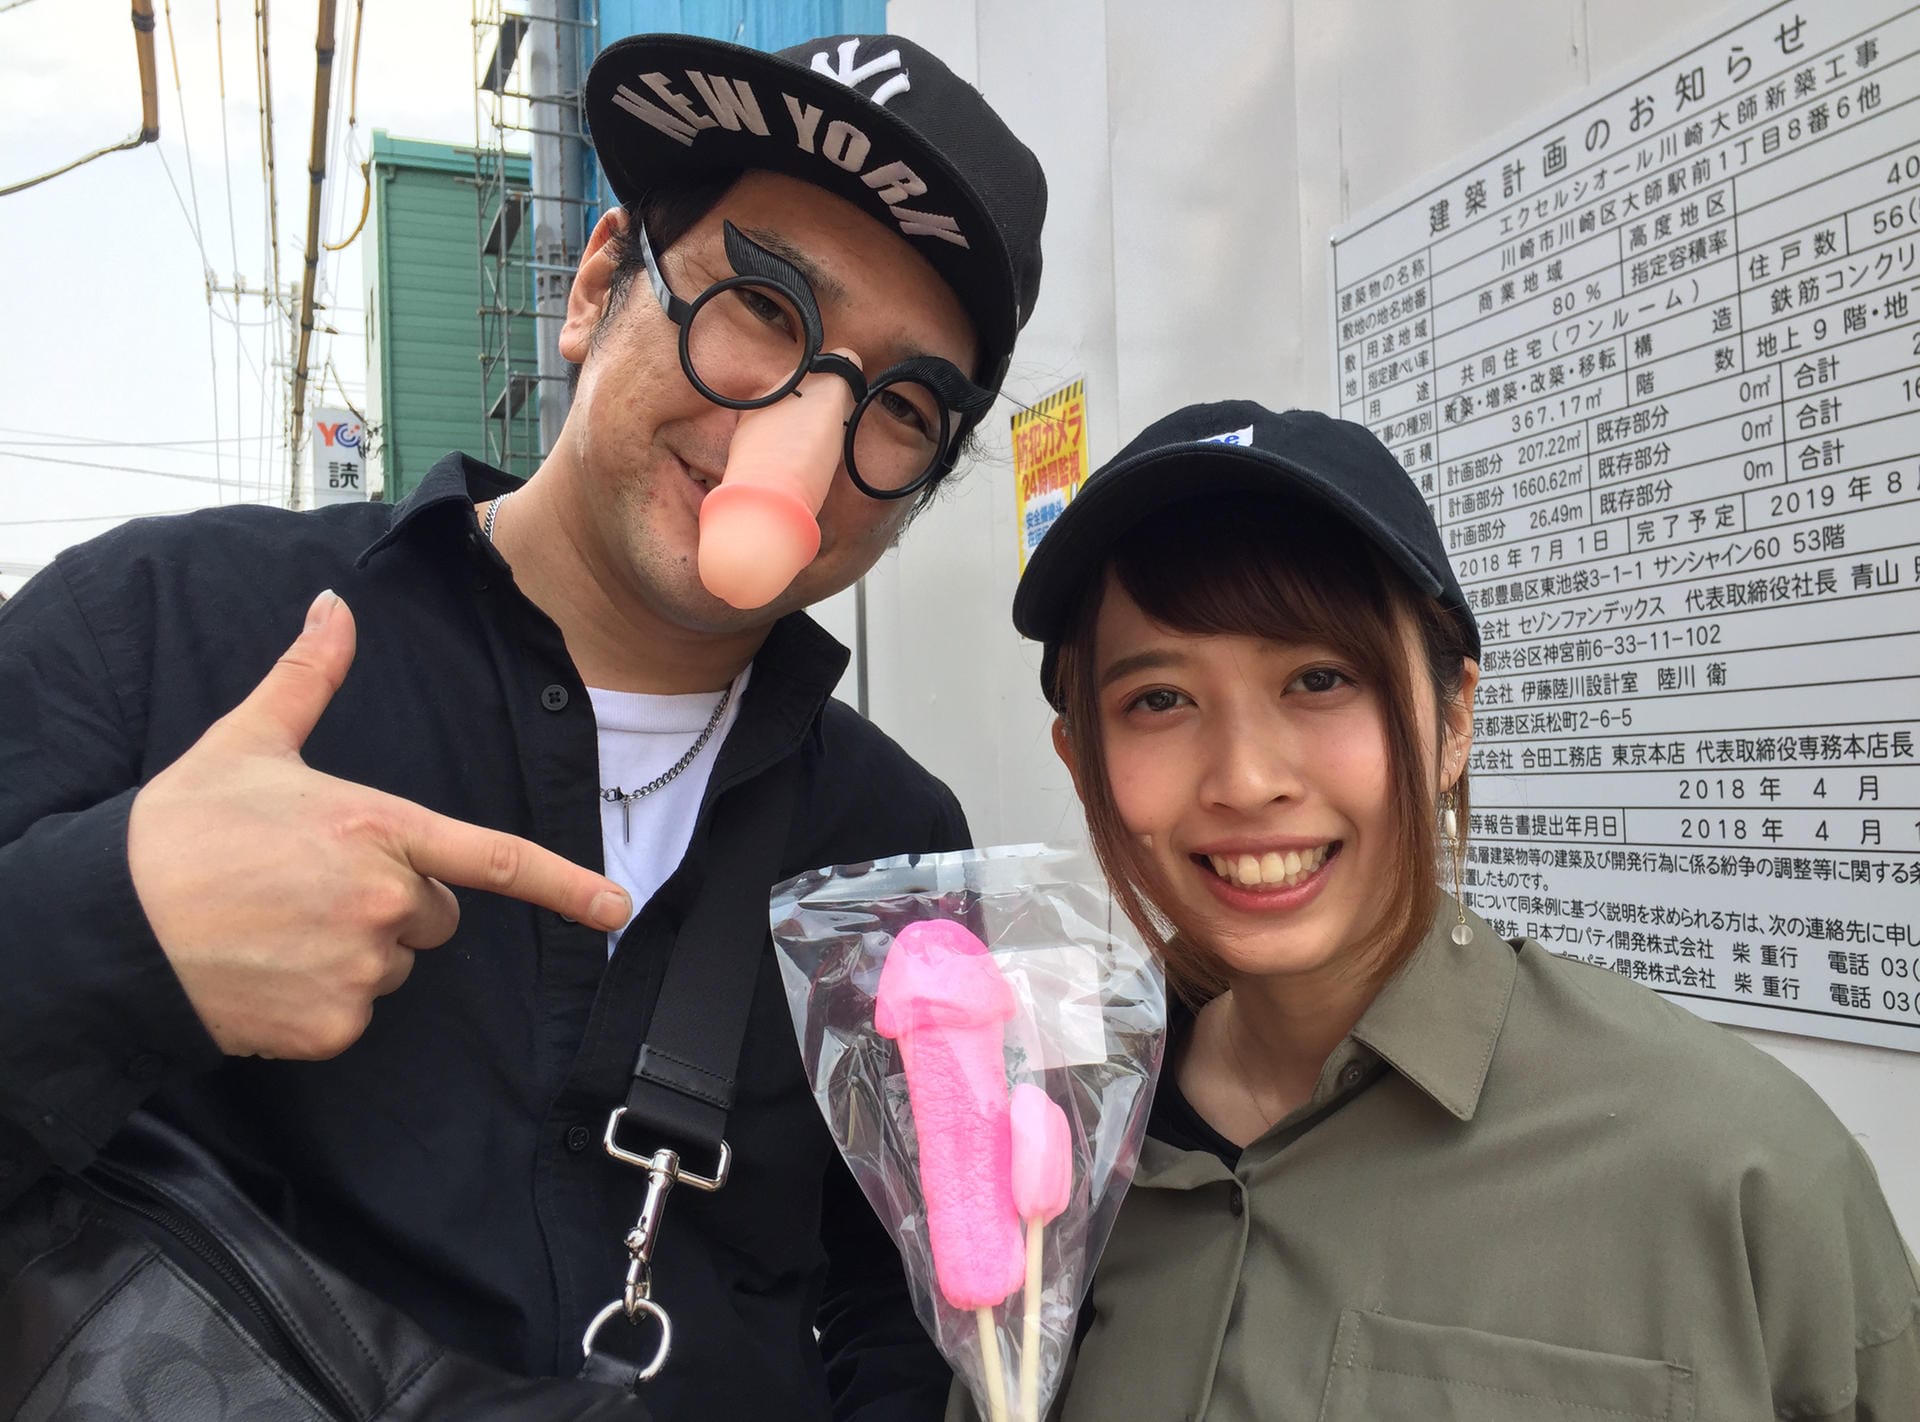 Besucher des Phallus-Festivals zeigen Souvenirs: Die japanischen YouTuber Shinya (l) und Yuriyuri zeigen beim Phallus-Festival einen rosafarbenen Penis-Lolli.